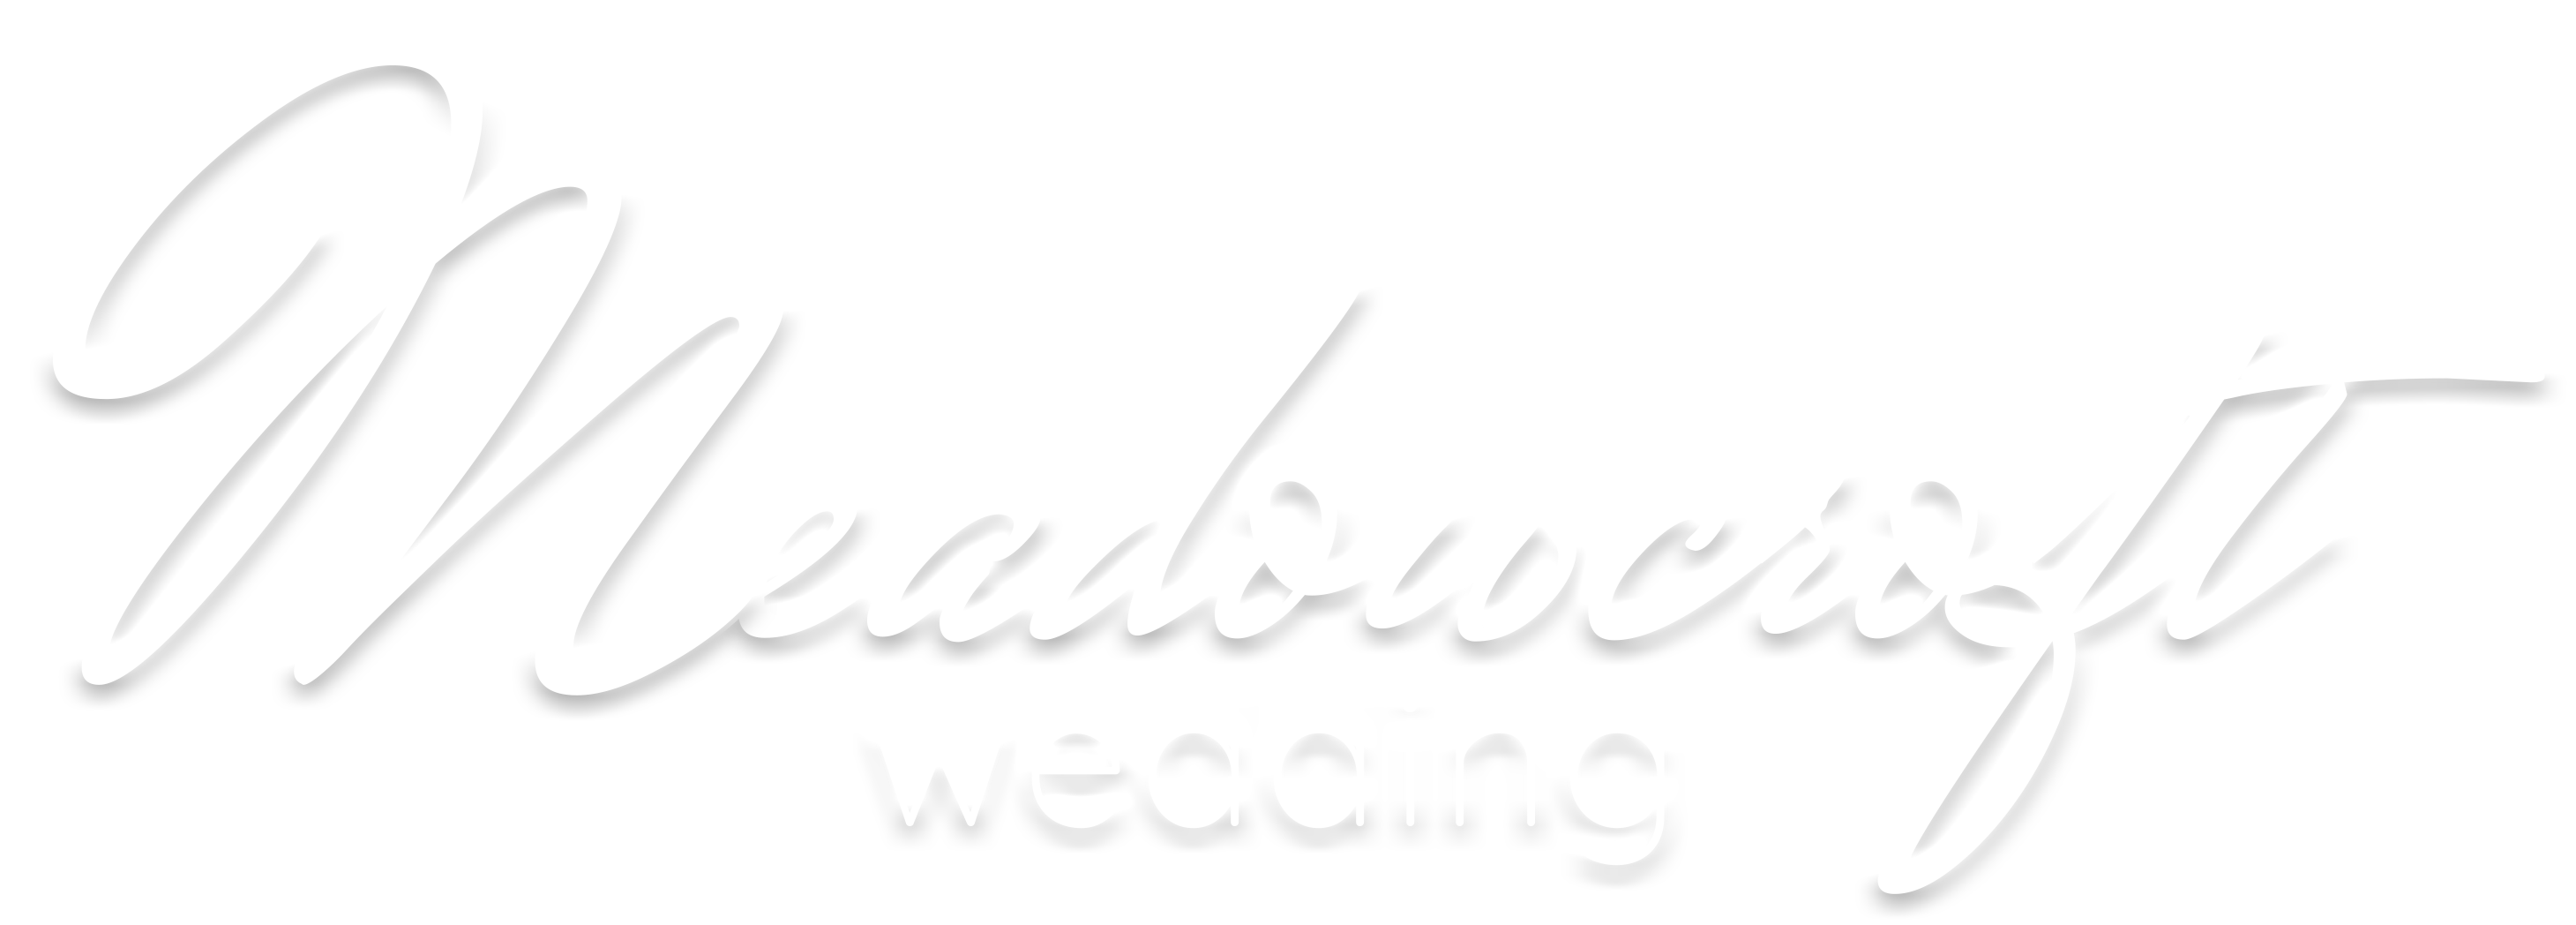 Meadowcroft Wedding